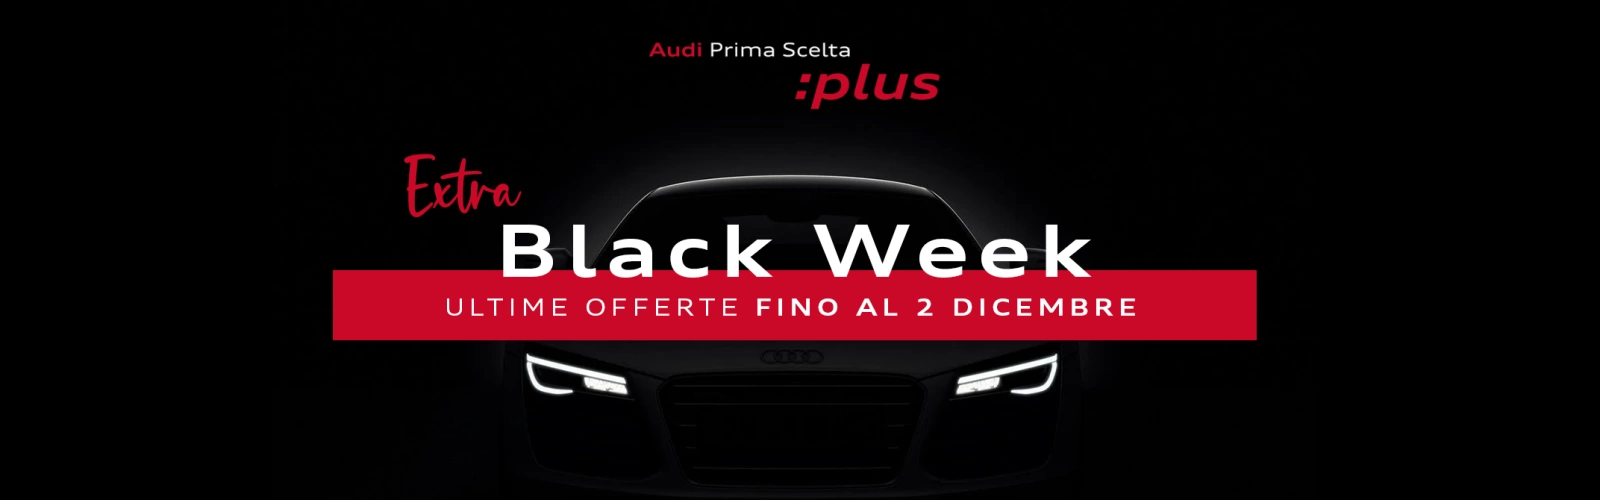 Extra Black Week | Audi Prima Scelta :plus